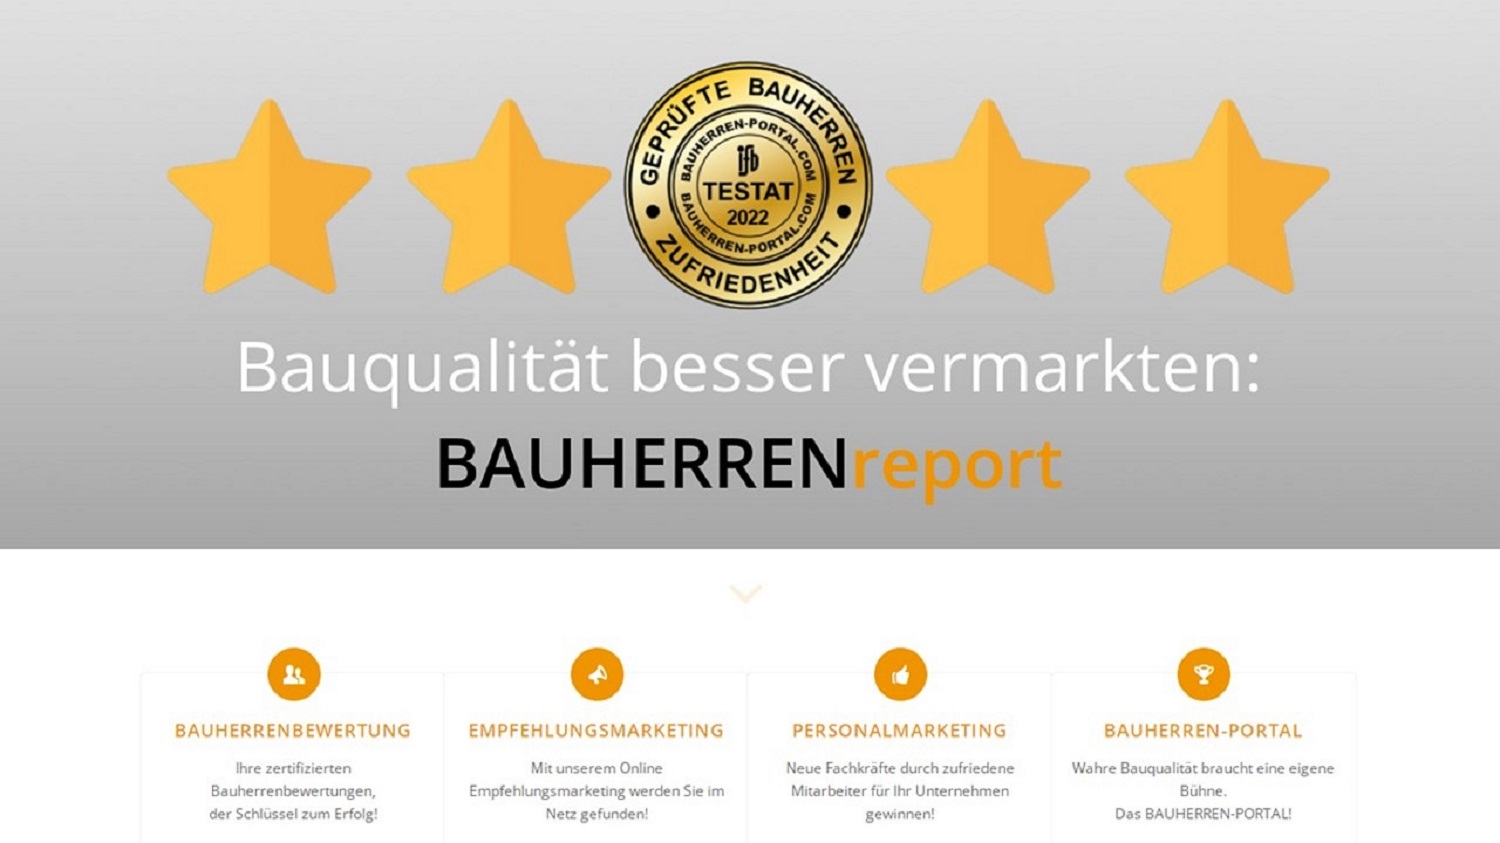 BAUHERRENreport GmbH: Marketing der Spitzenklasse für Bauunternehmen